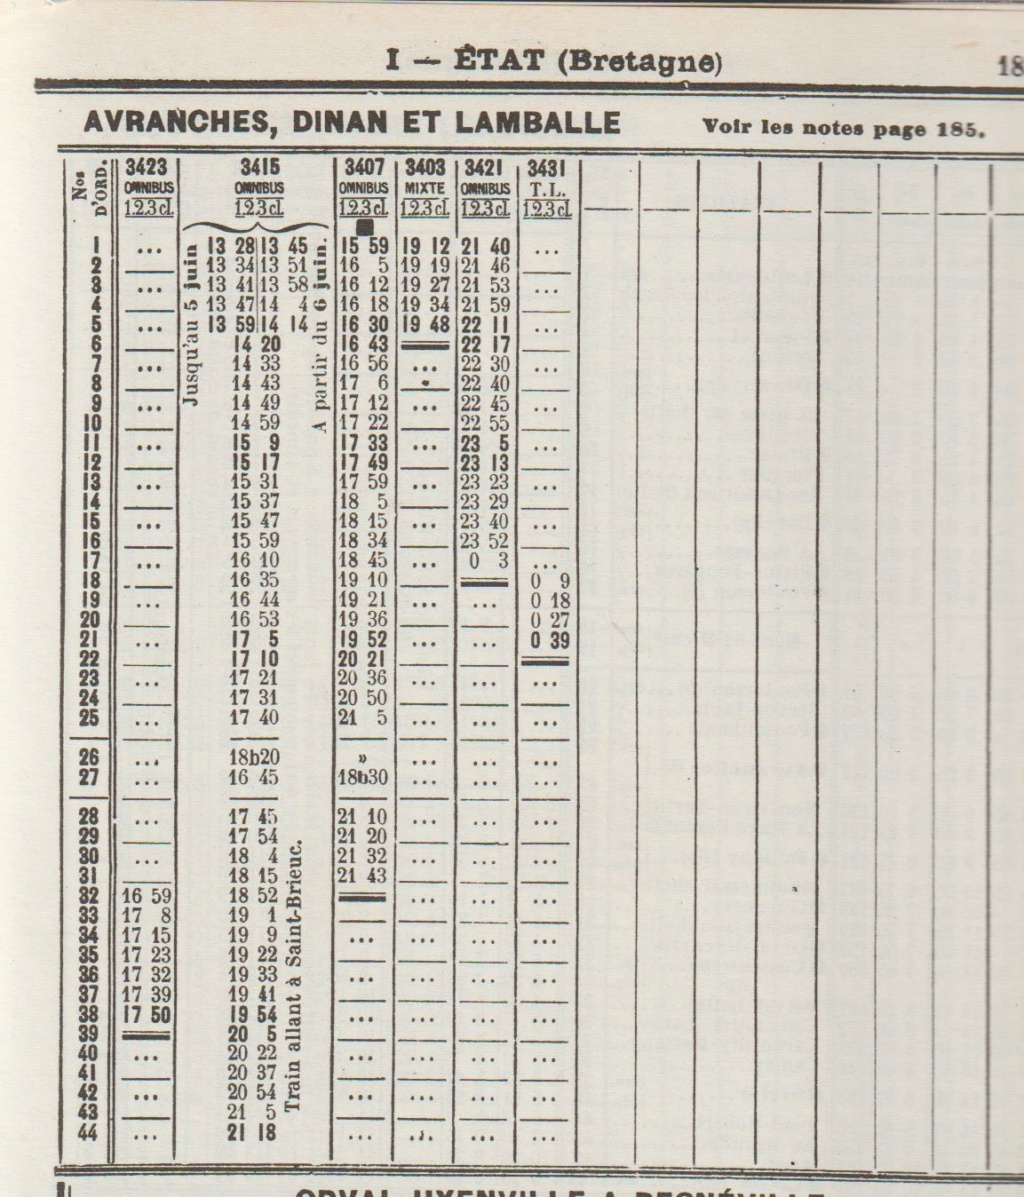 Lamballe Dinan Dol Lison Chaix ETAT mai 1914 SNCF 1956 1970 1971 1972 1974 été 1980 été 1995 sept 2009 Image131